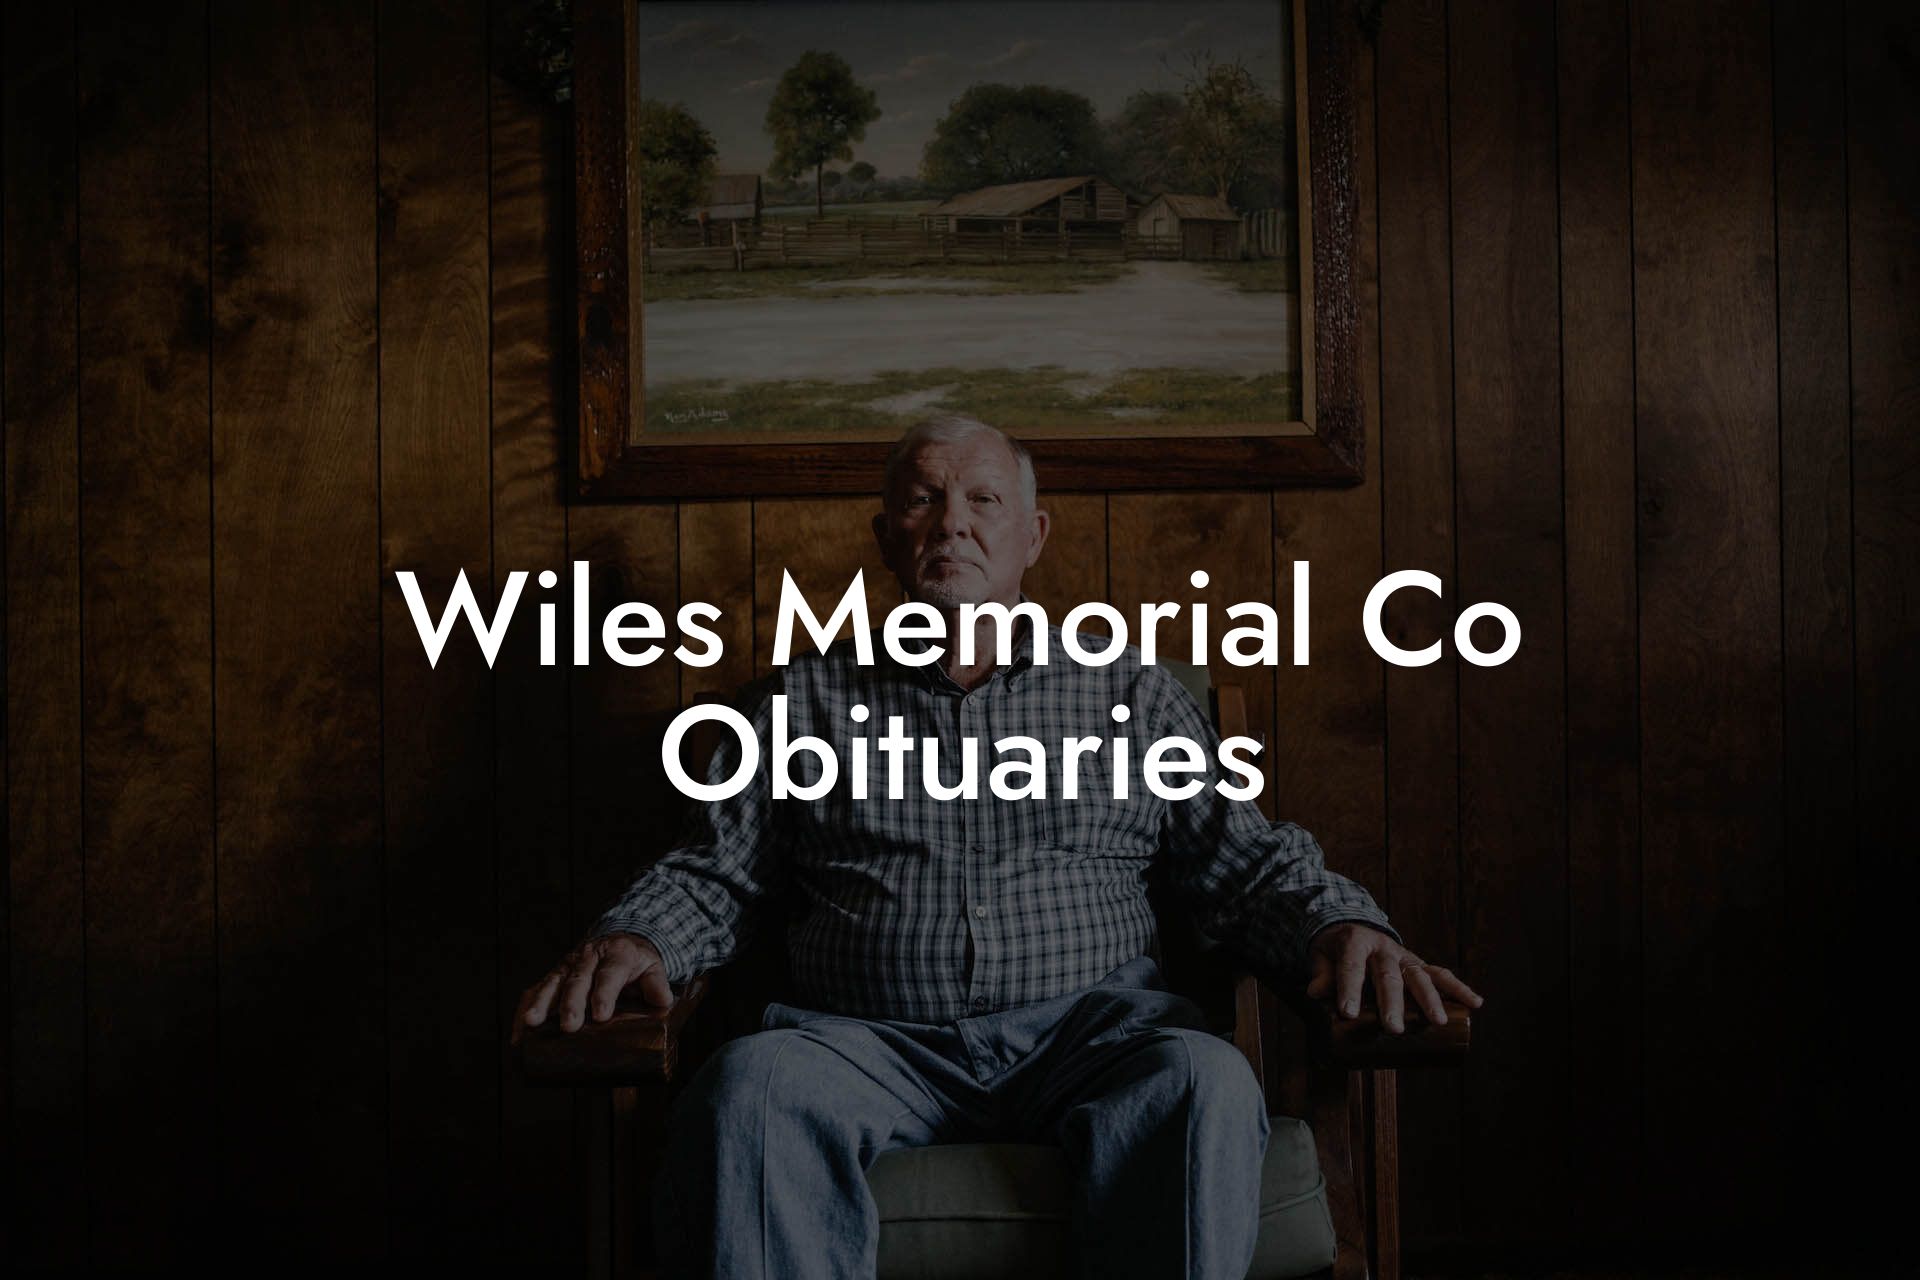 Wiles Memorial Co Obituaries